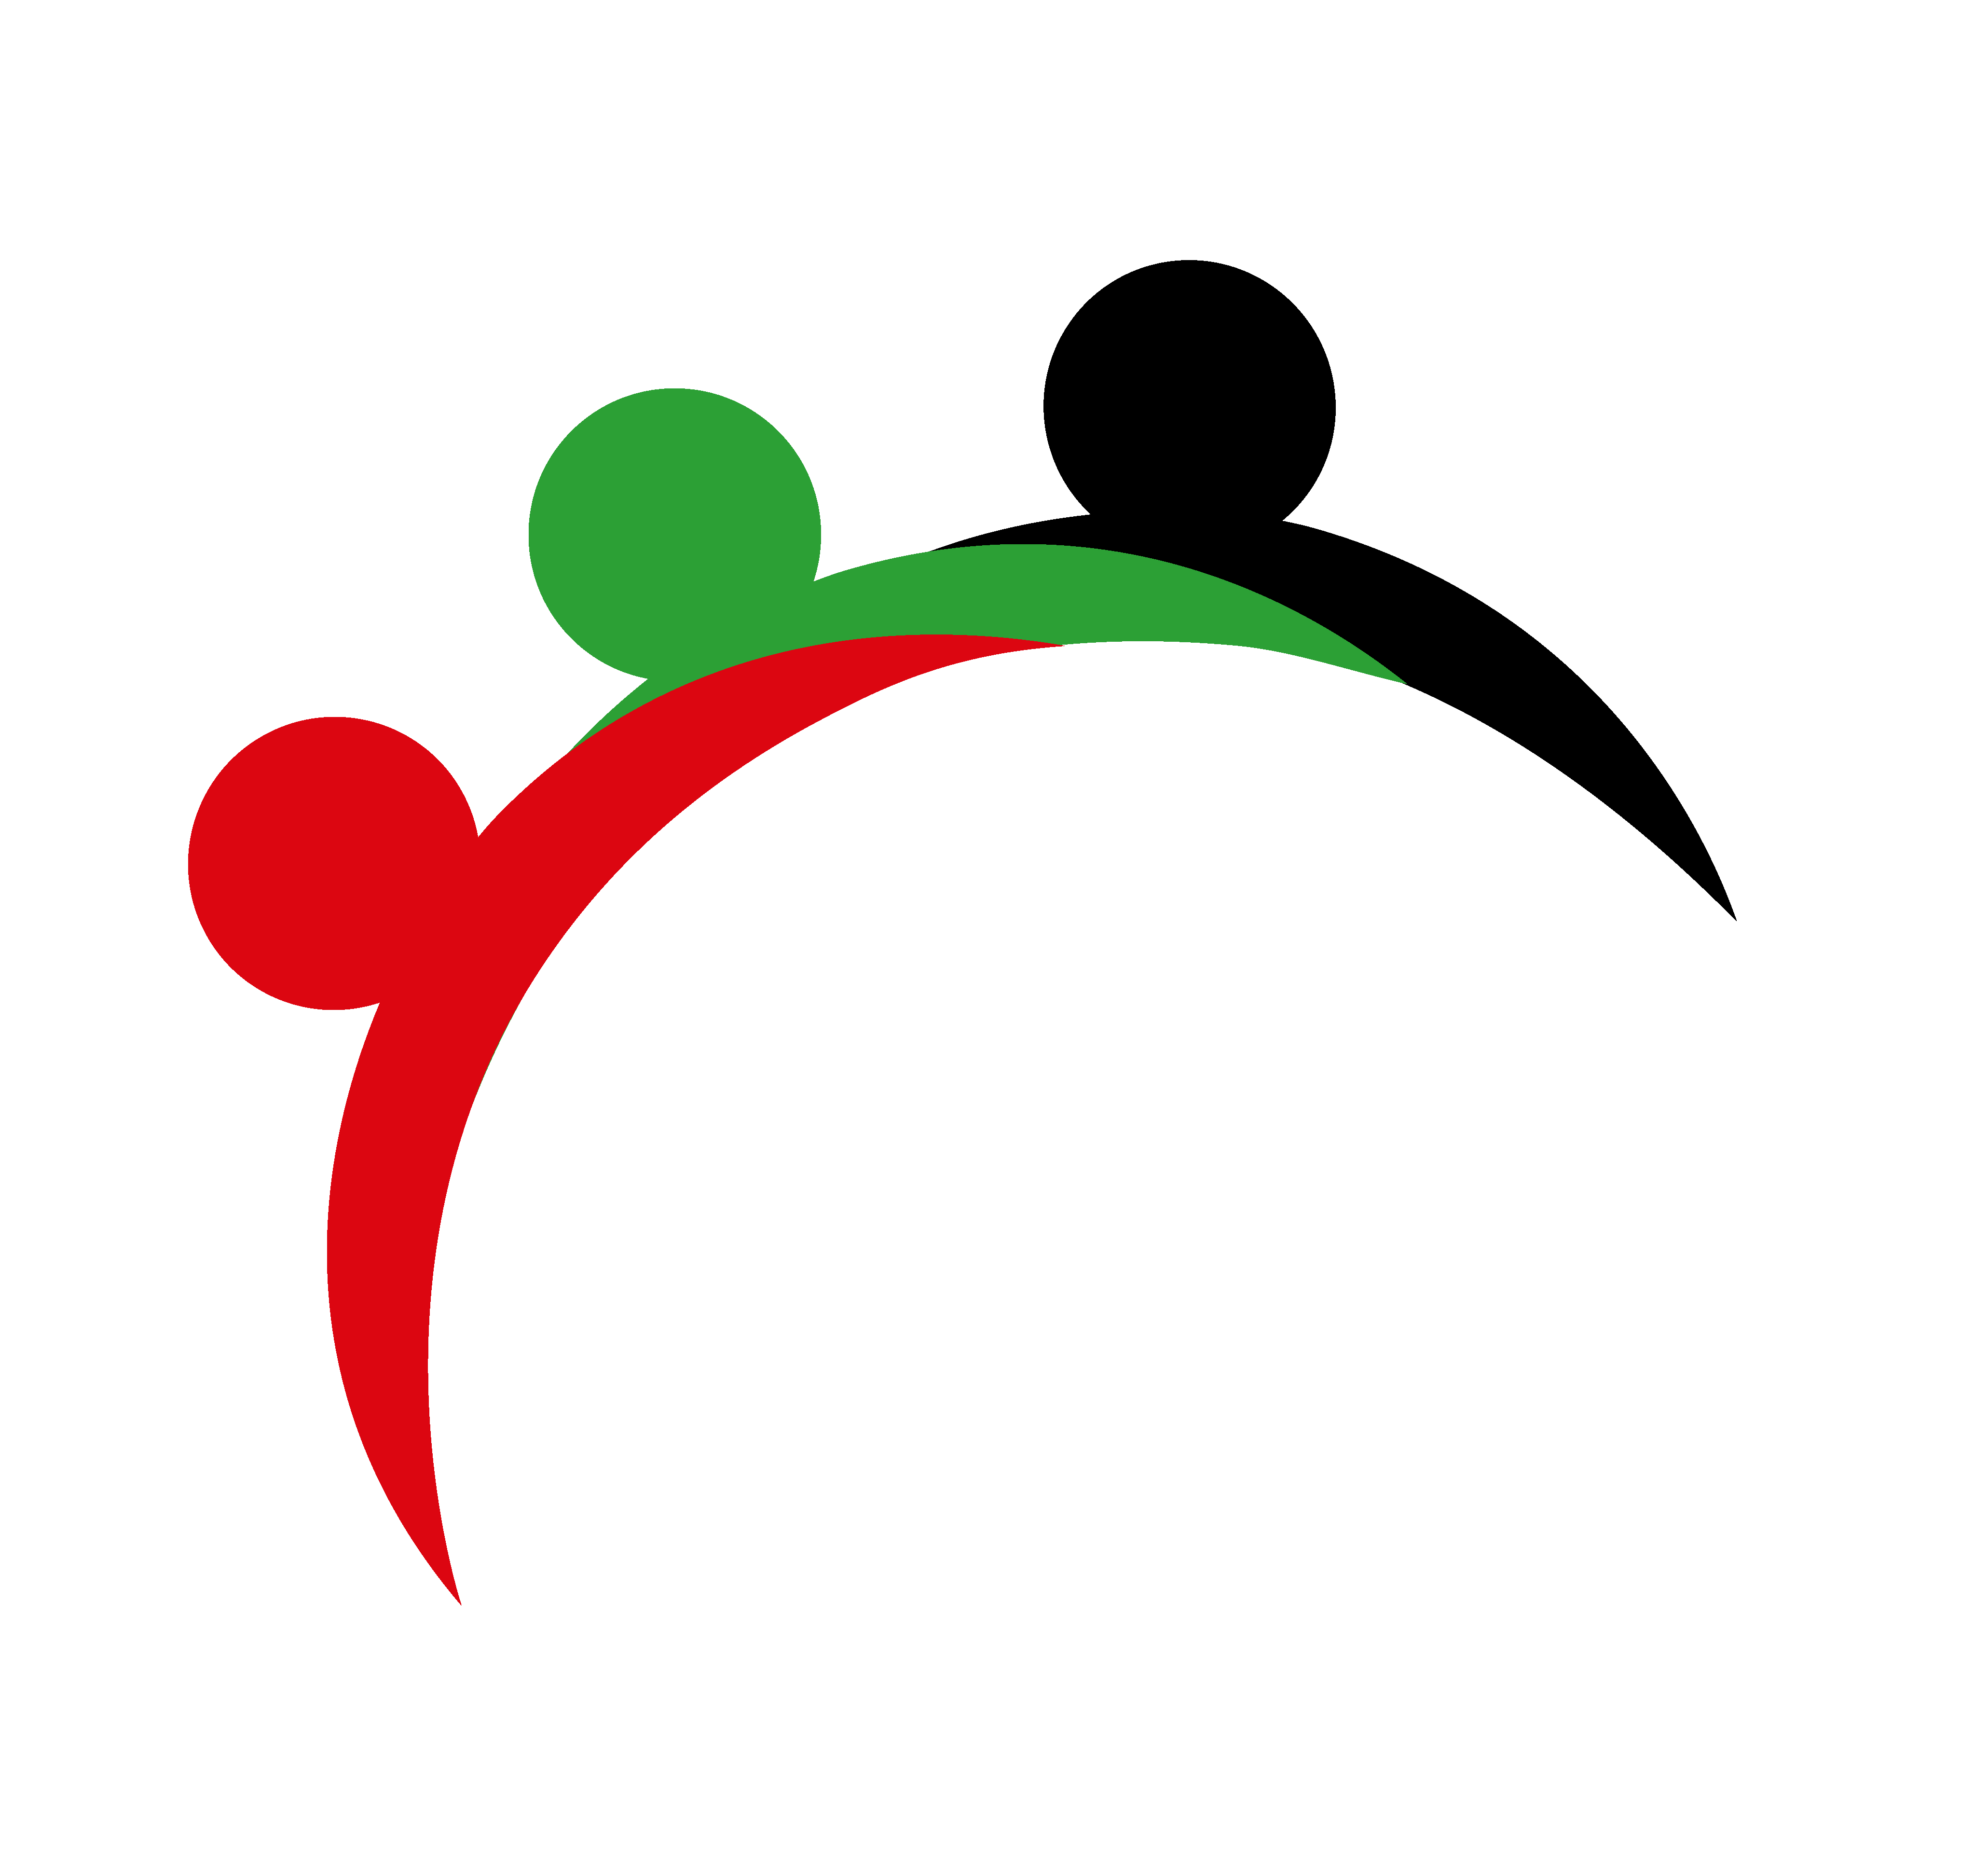 NIMS Group, UAE